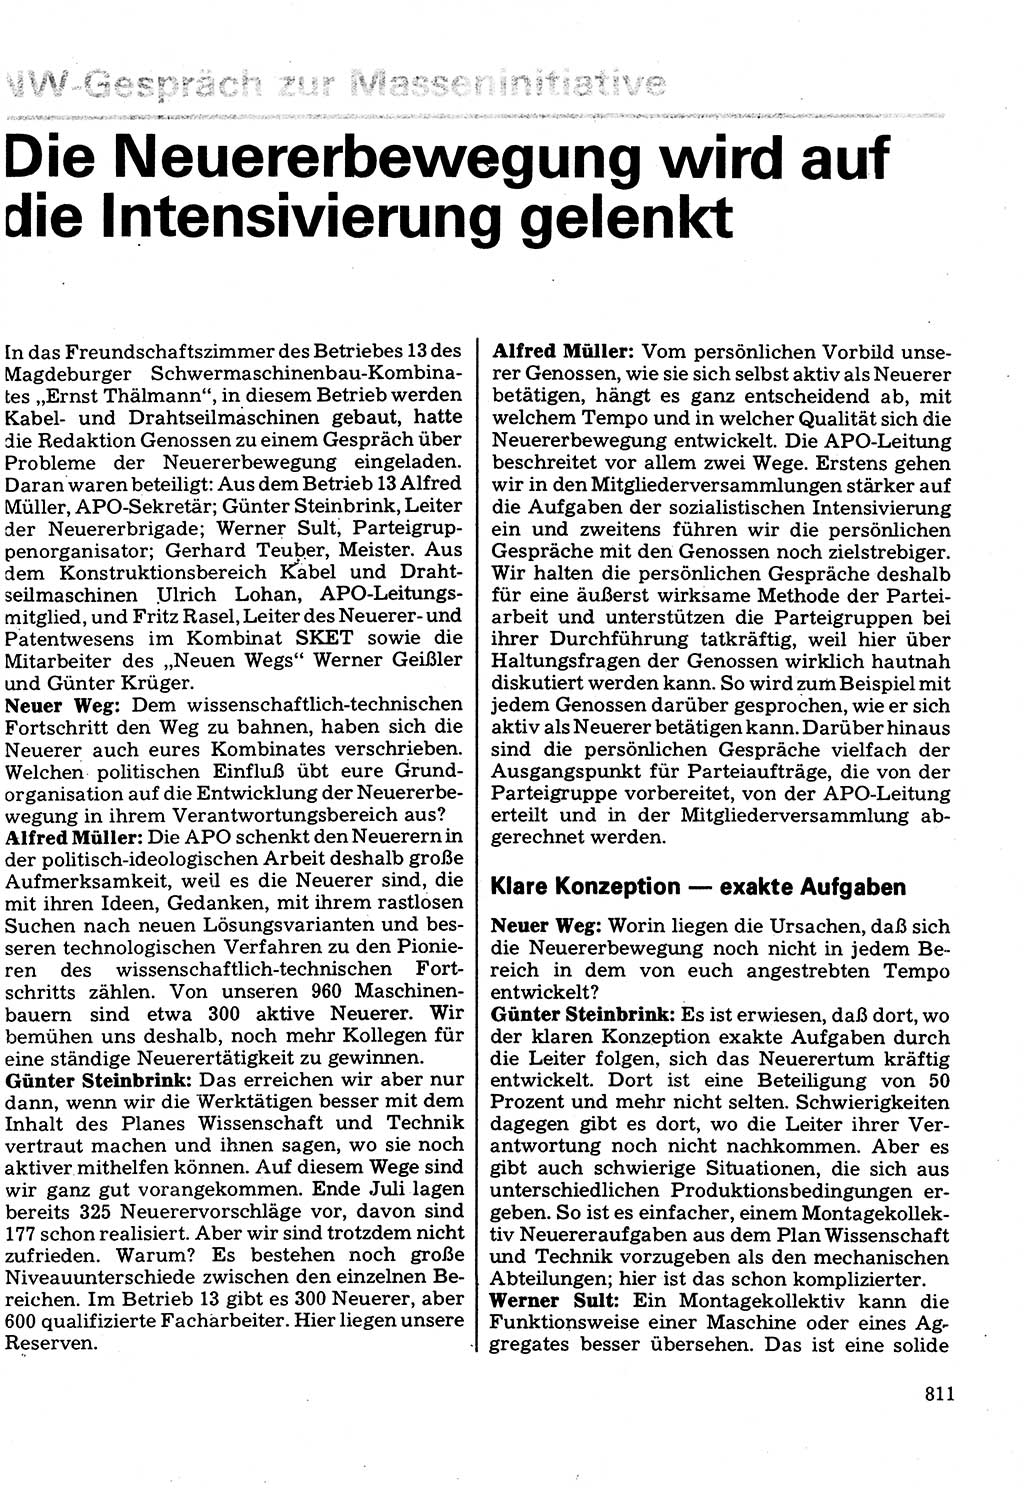 Neuer Weg (NW), Organ des Zentralkomitees (ZK) der SED (Sozialistische Einheitspartei Deutschlands) für Fragen des Parteilebens, 32. Jahrgang [Deutsche Demokratische Republik (DDR)] 1977, Seite 811 (NW ZK SED DDR 1977, S. 811)